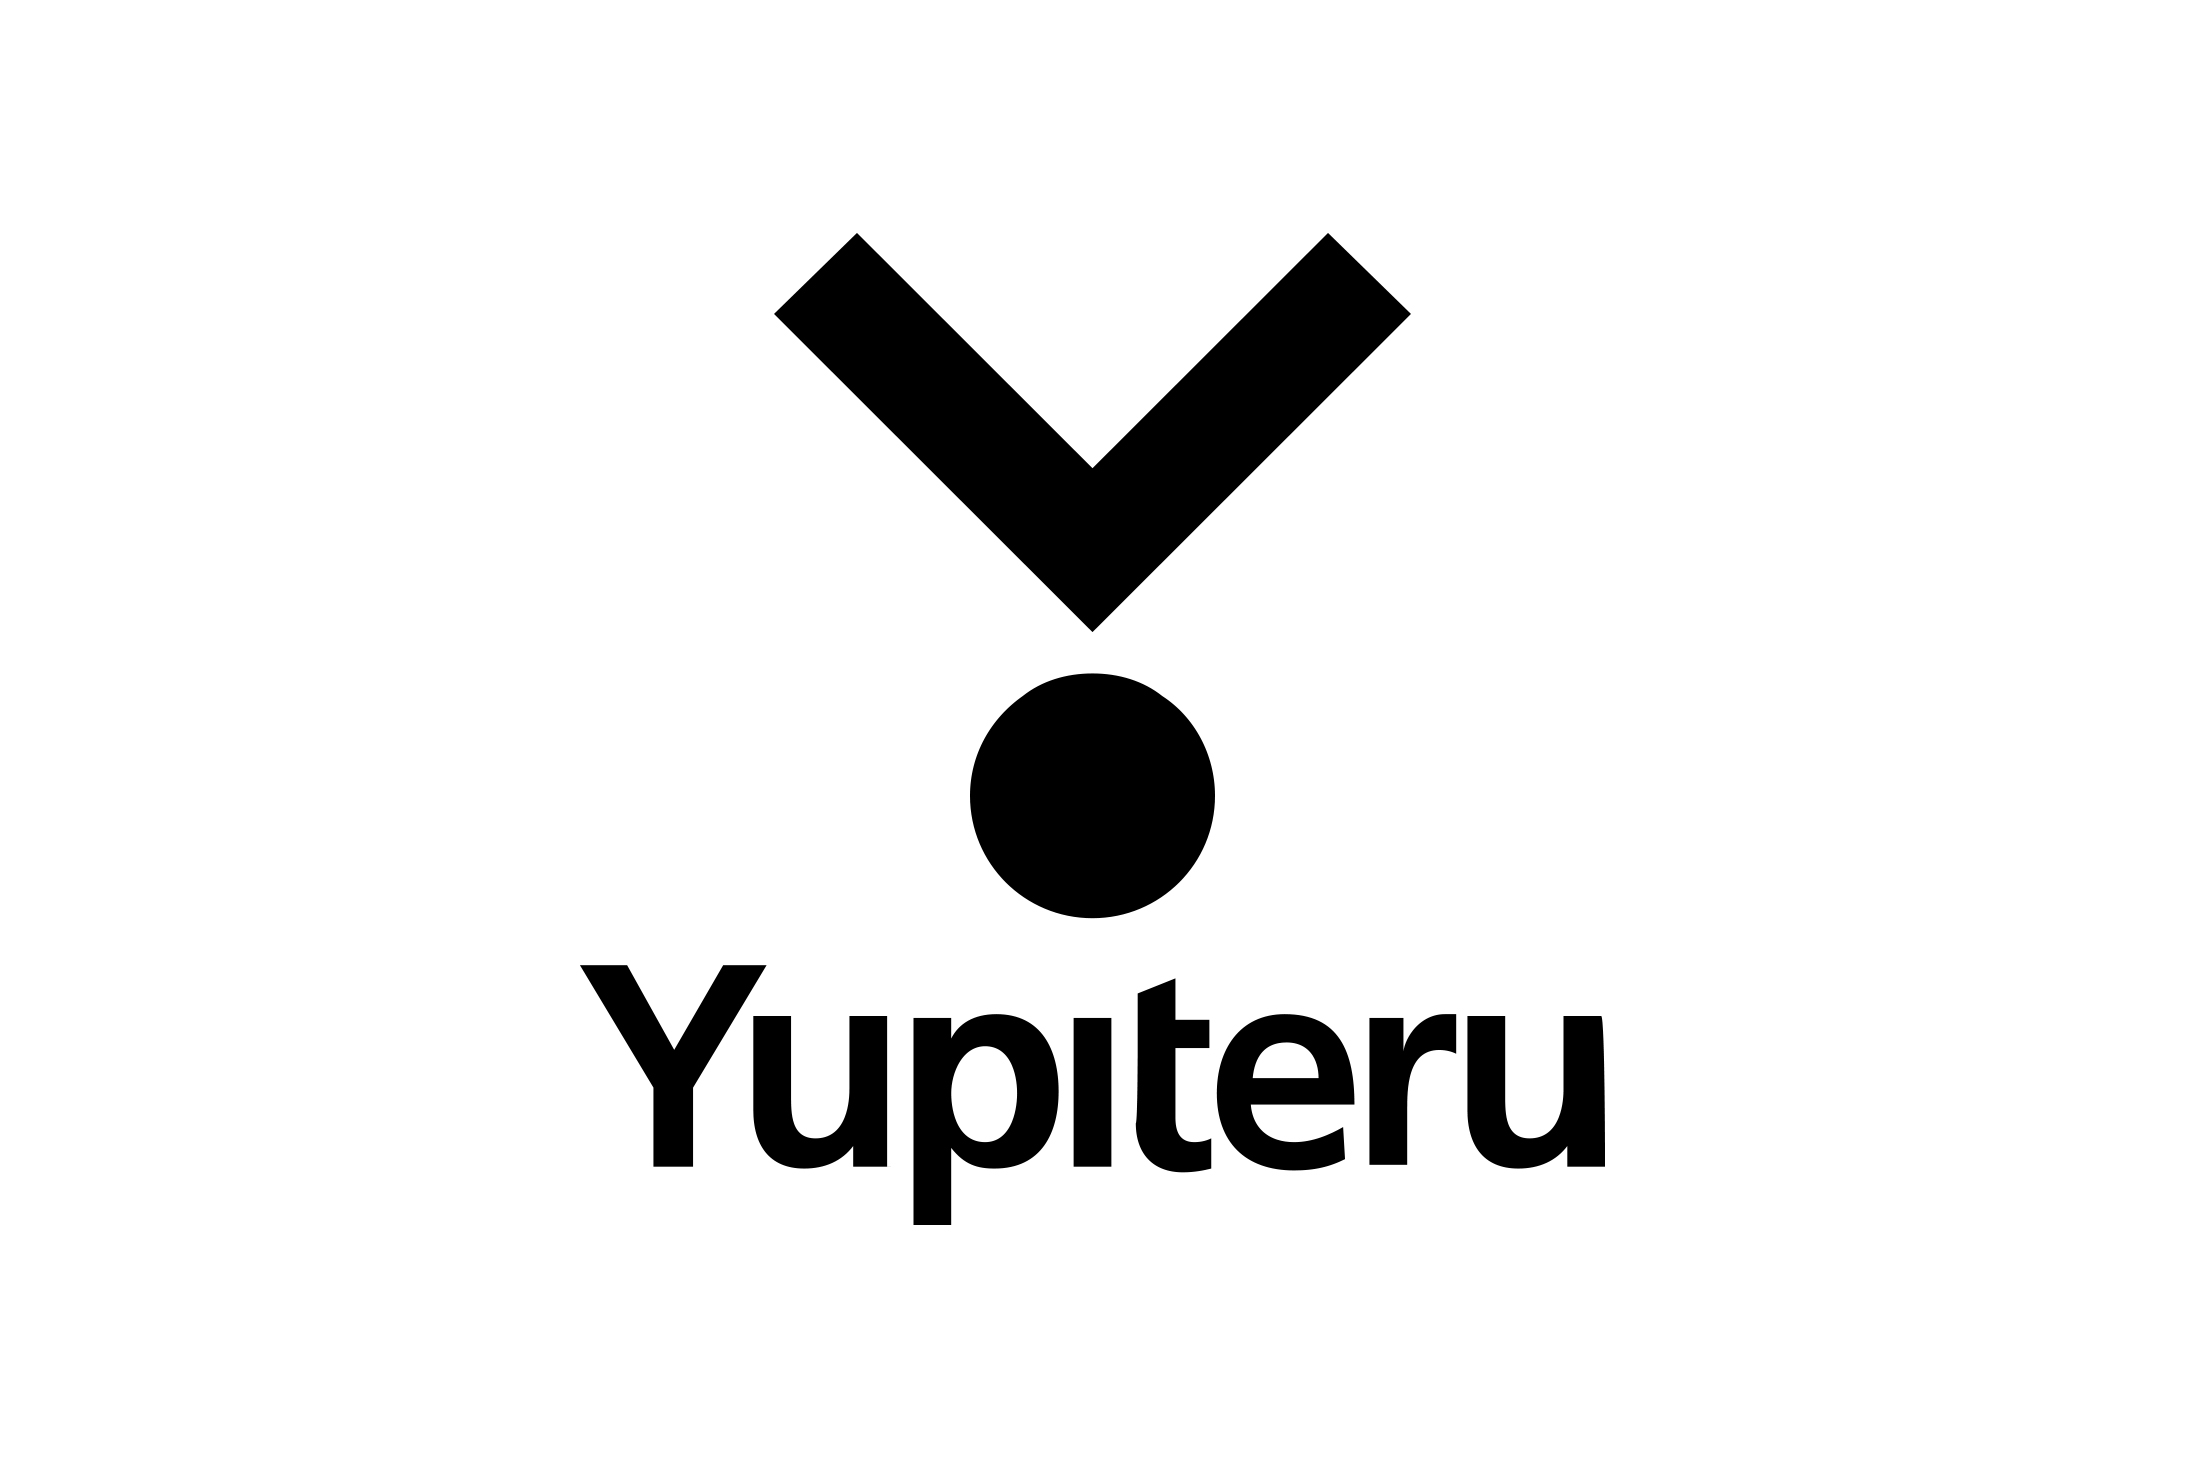 yupiteru